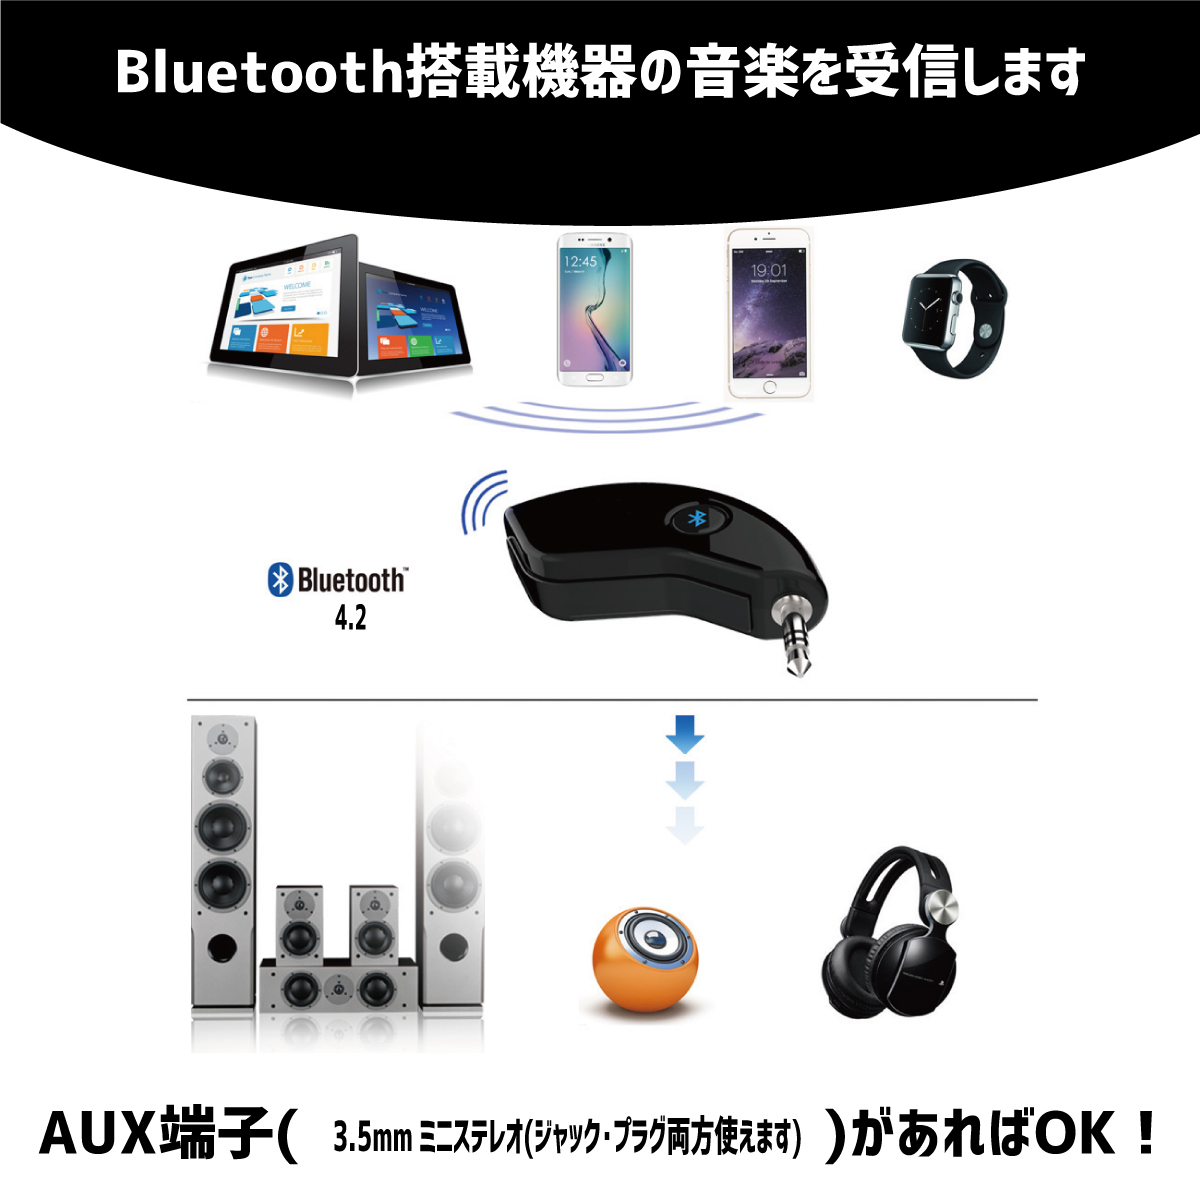 楽天市場 Bluetoothレシーバー 受信機 Aux 無線 ワイヤレス ブルートゥース 車載 音楽再生 ハンズフリー通話 ワイヤレス オーディオ レシーバー Purple7